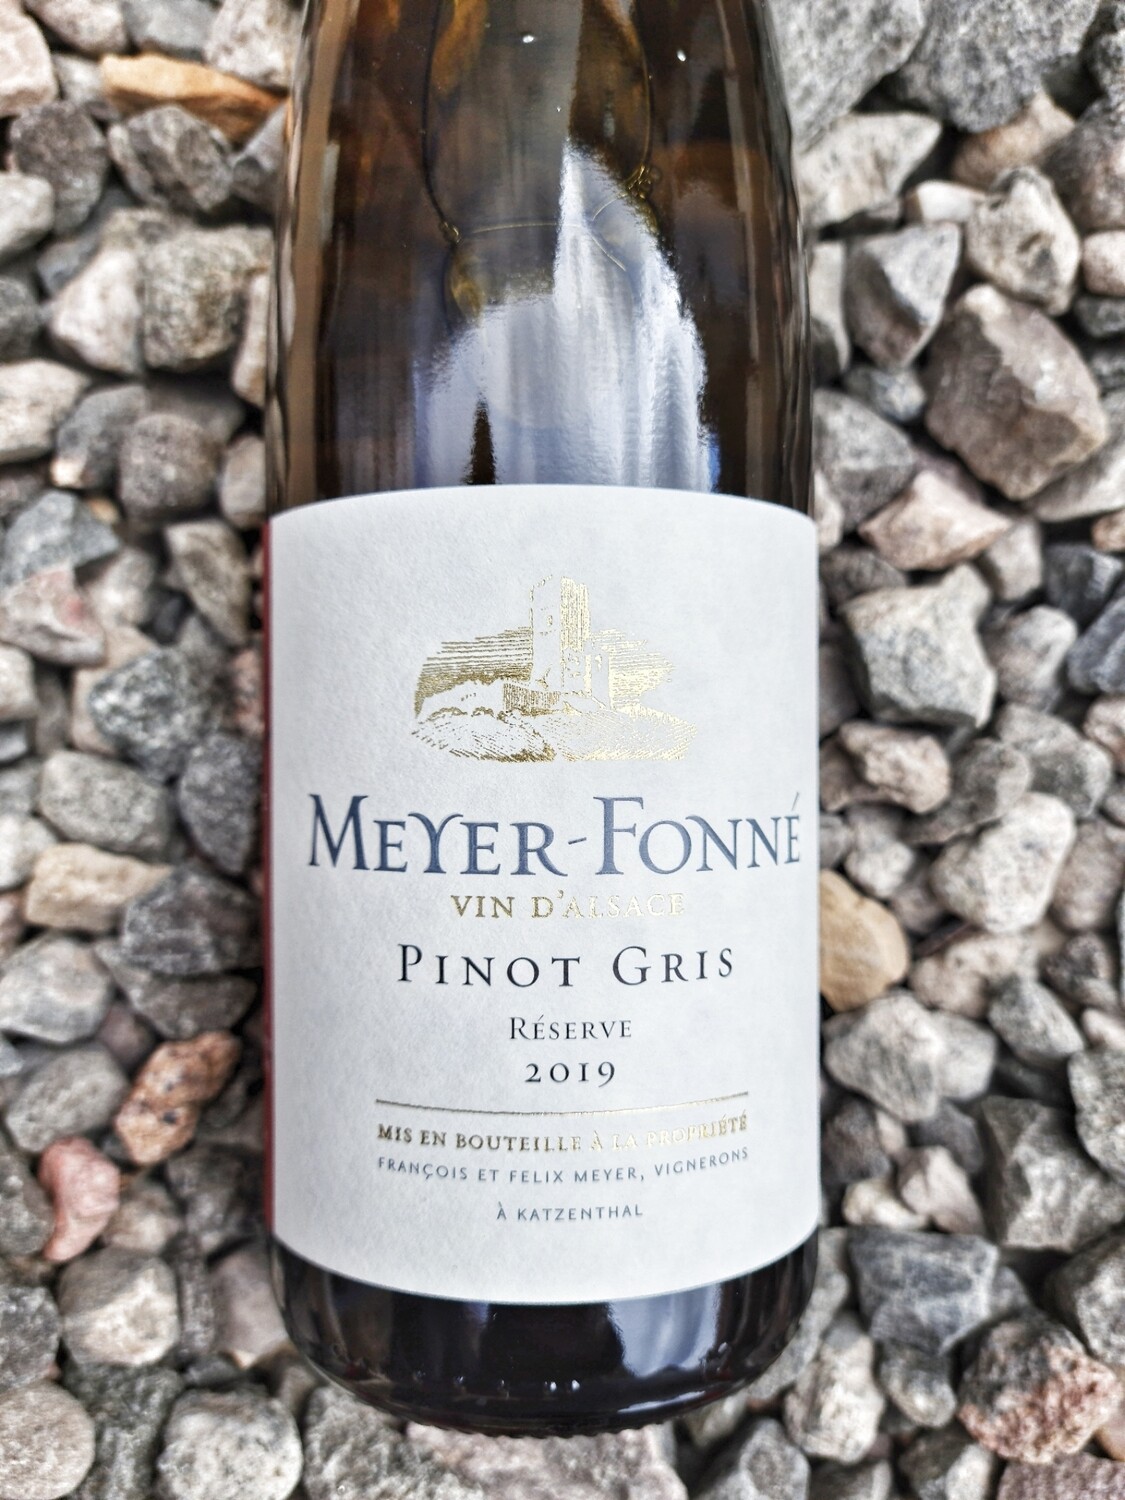 Meyer Fonne Pinot Gris Reserve 2019